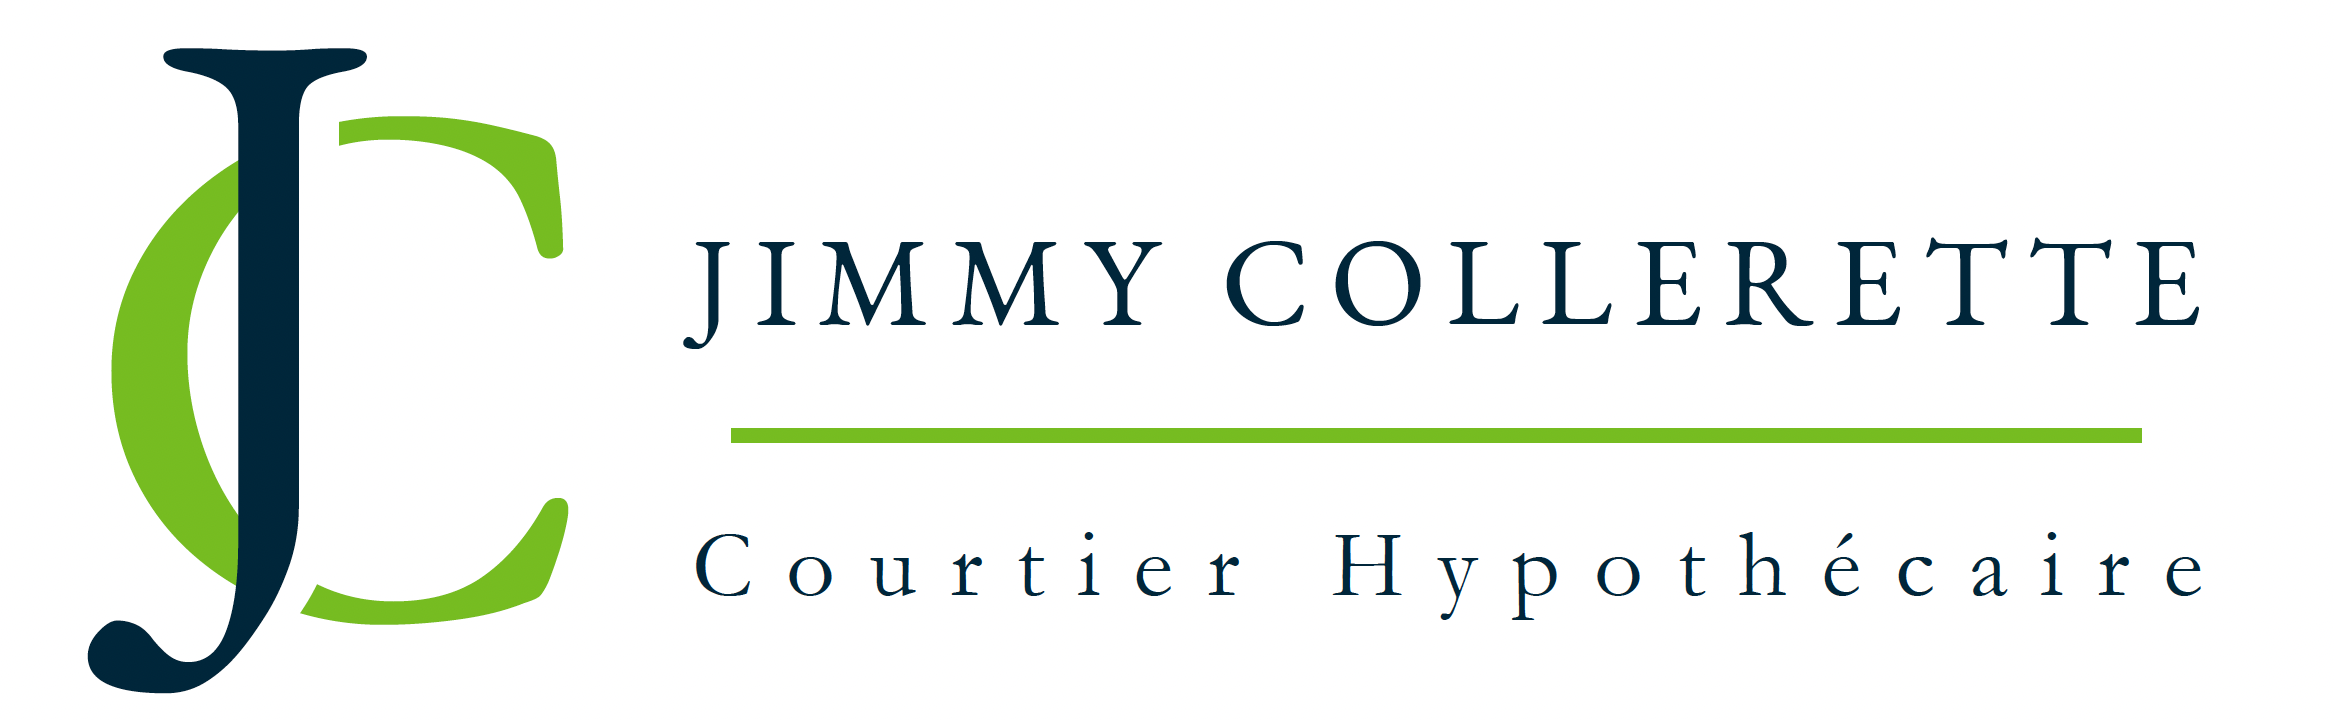 Jimmy Collerette Courtier Hypothécaire